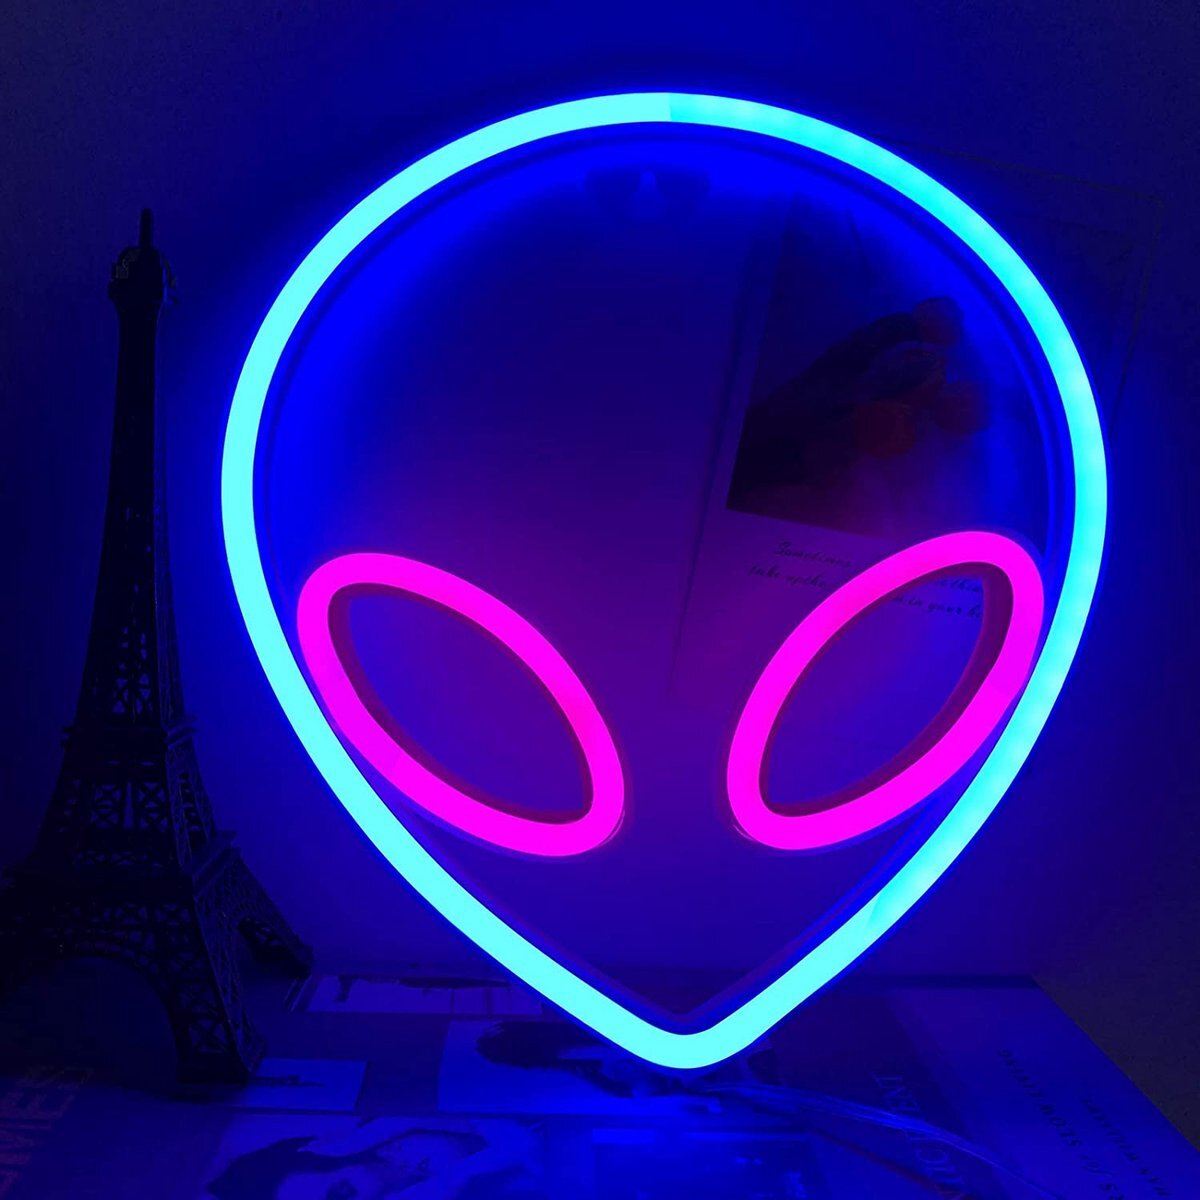 Decor Verlichting DecorVerlichting - Alien Lamp - Neon - Blauw met Roze - LED - USB of batterij - Wandlamp - Nachtlamp